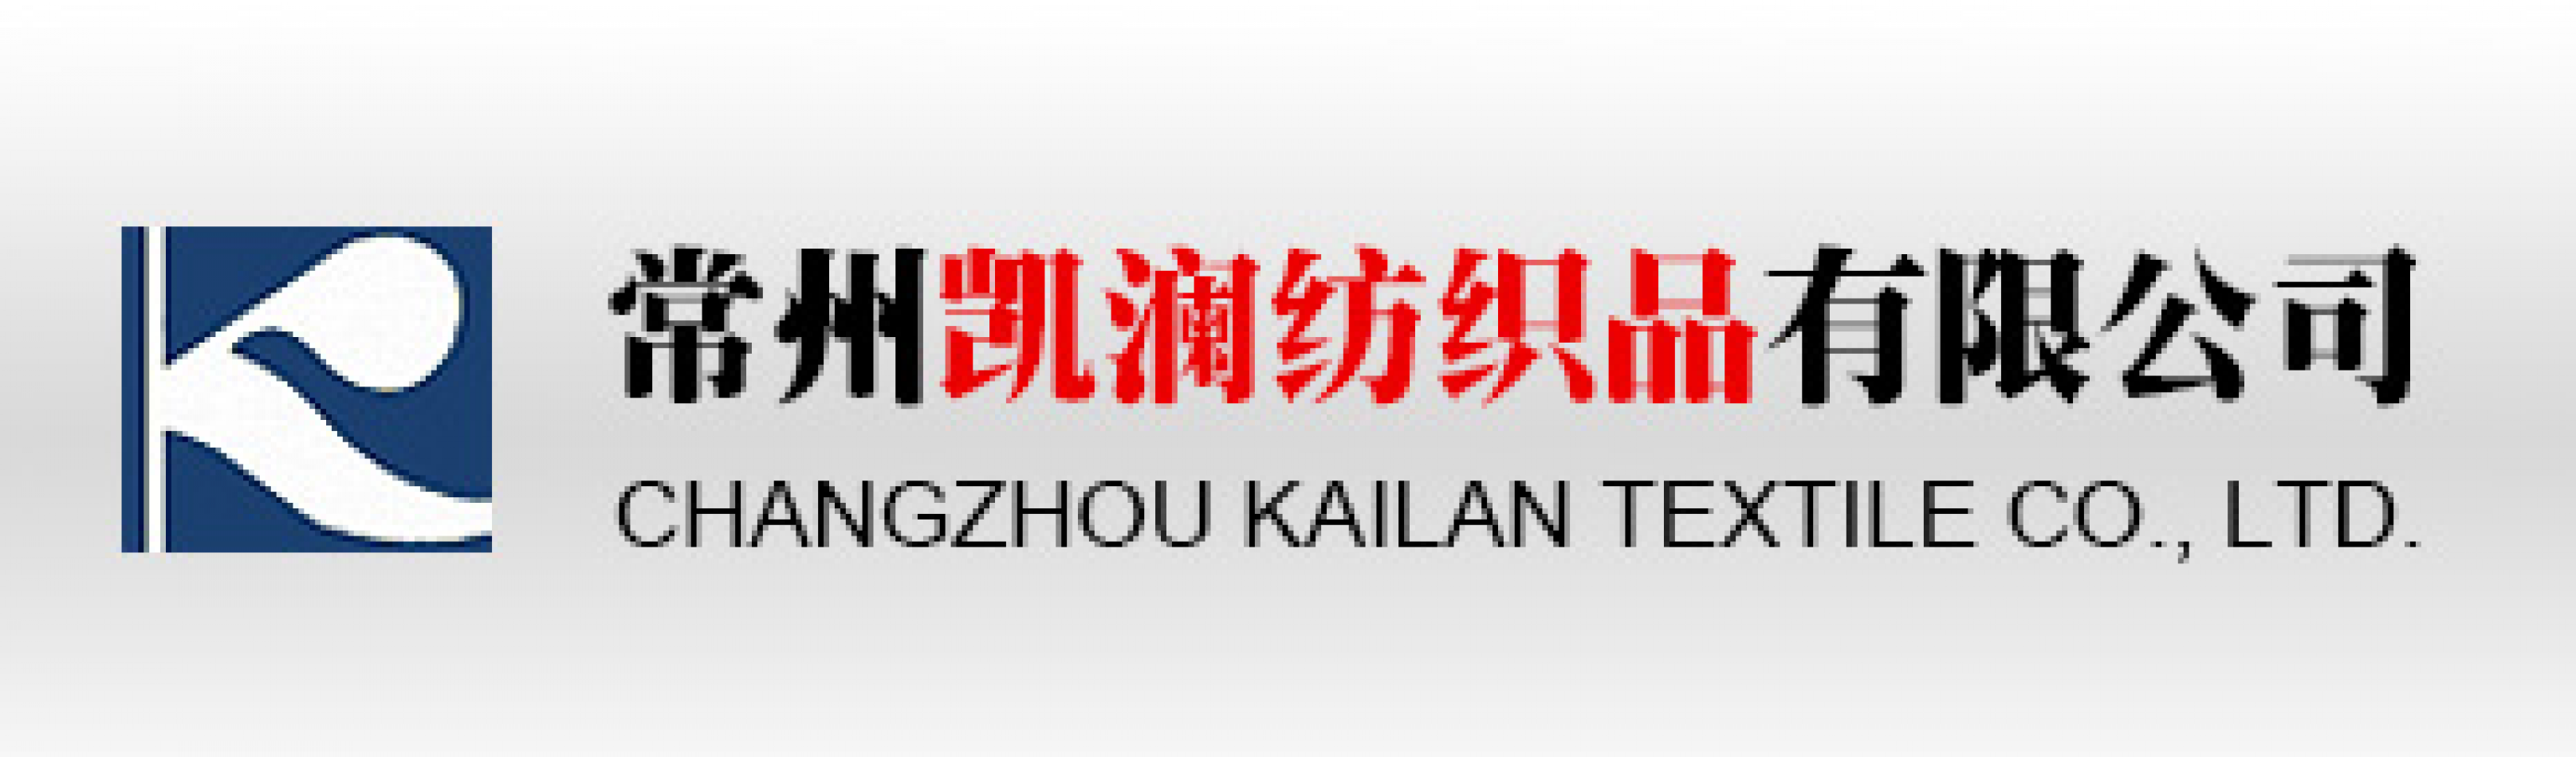 Changzhou Kailan Textile Co., Ltd.